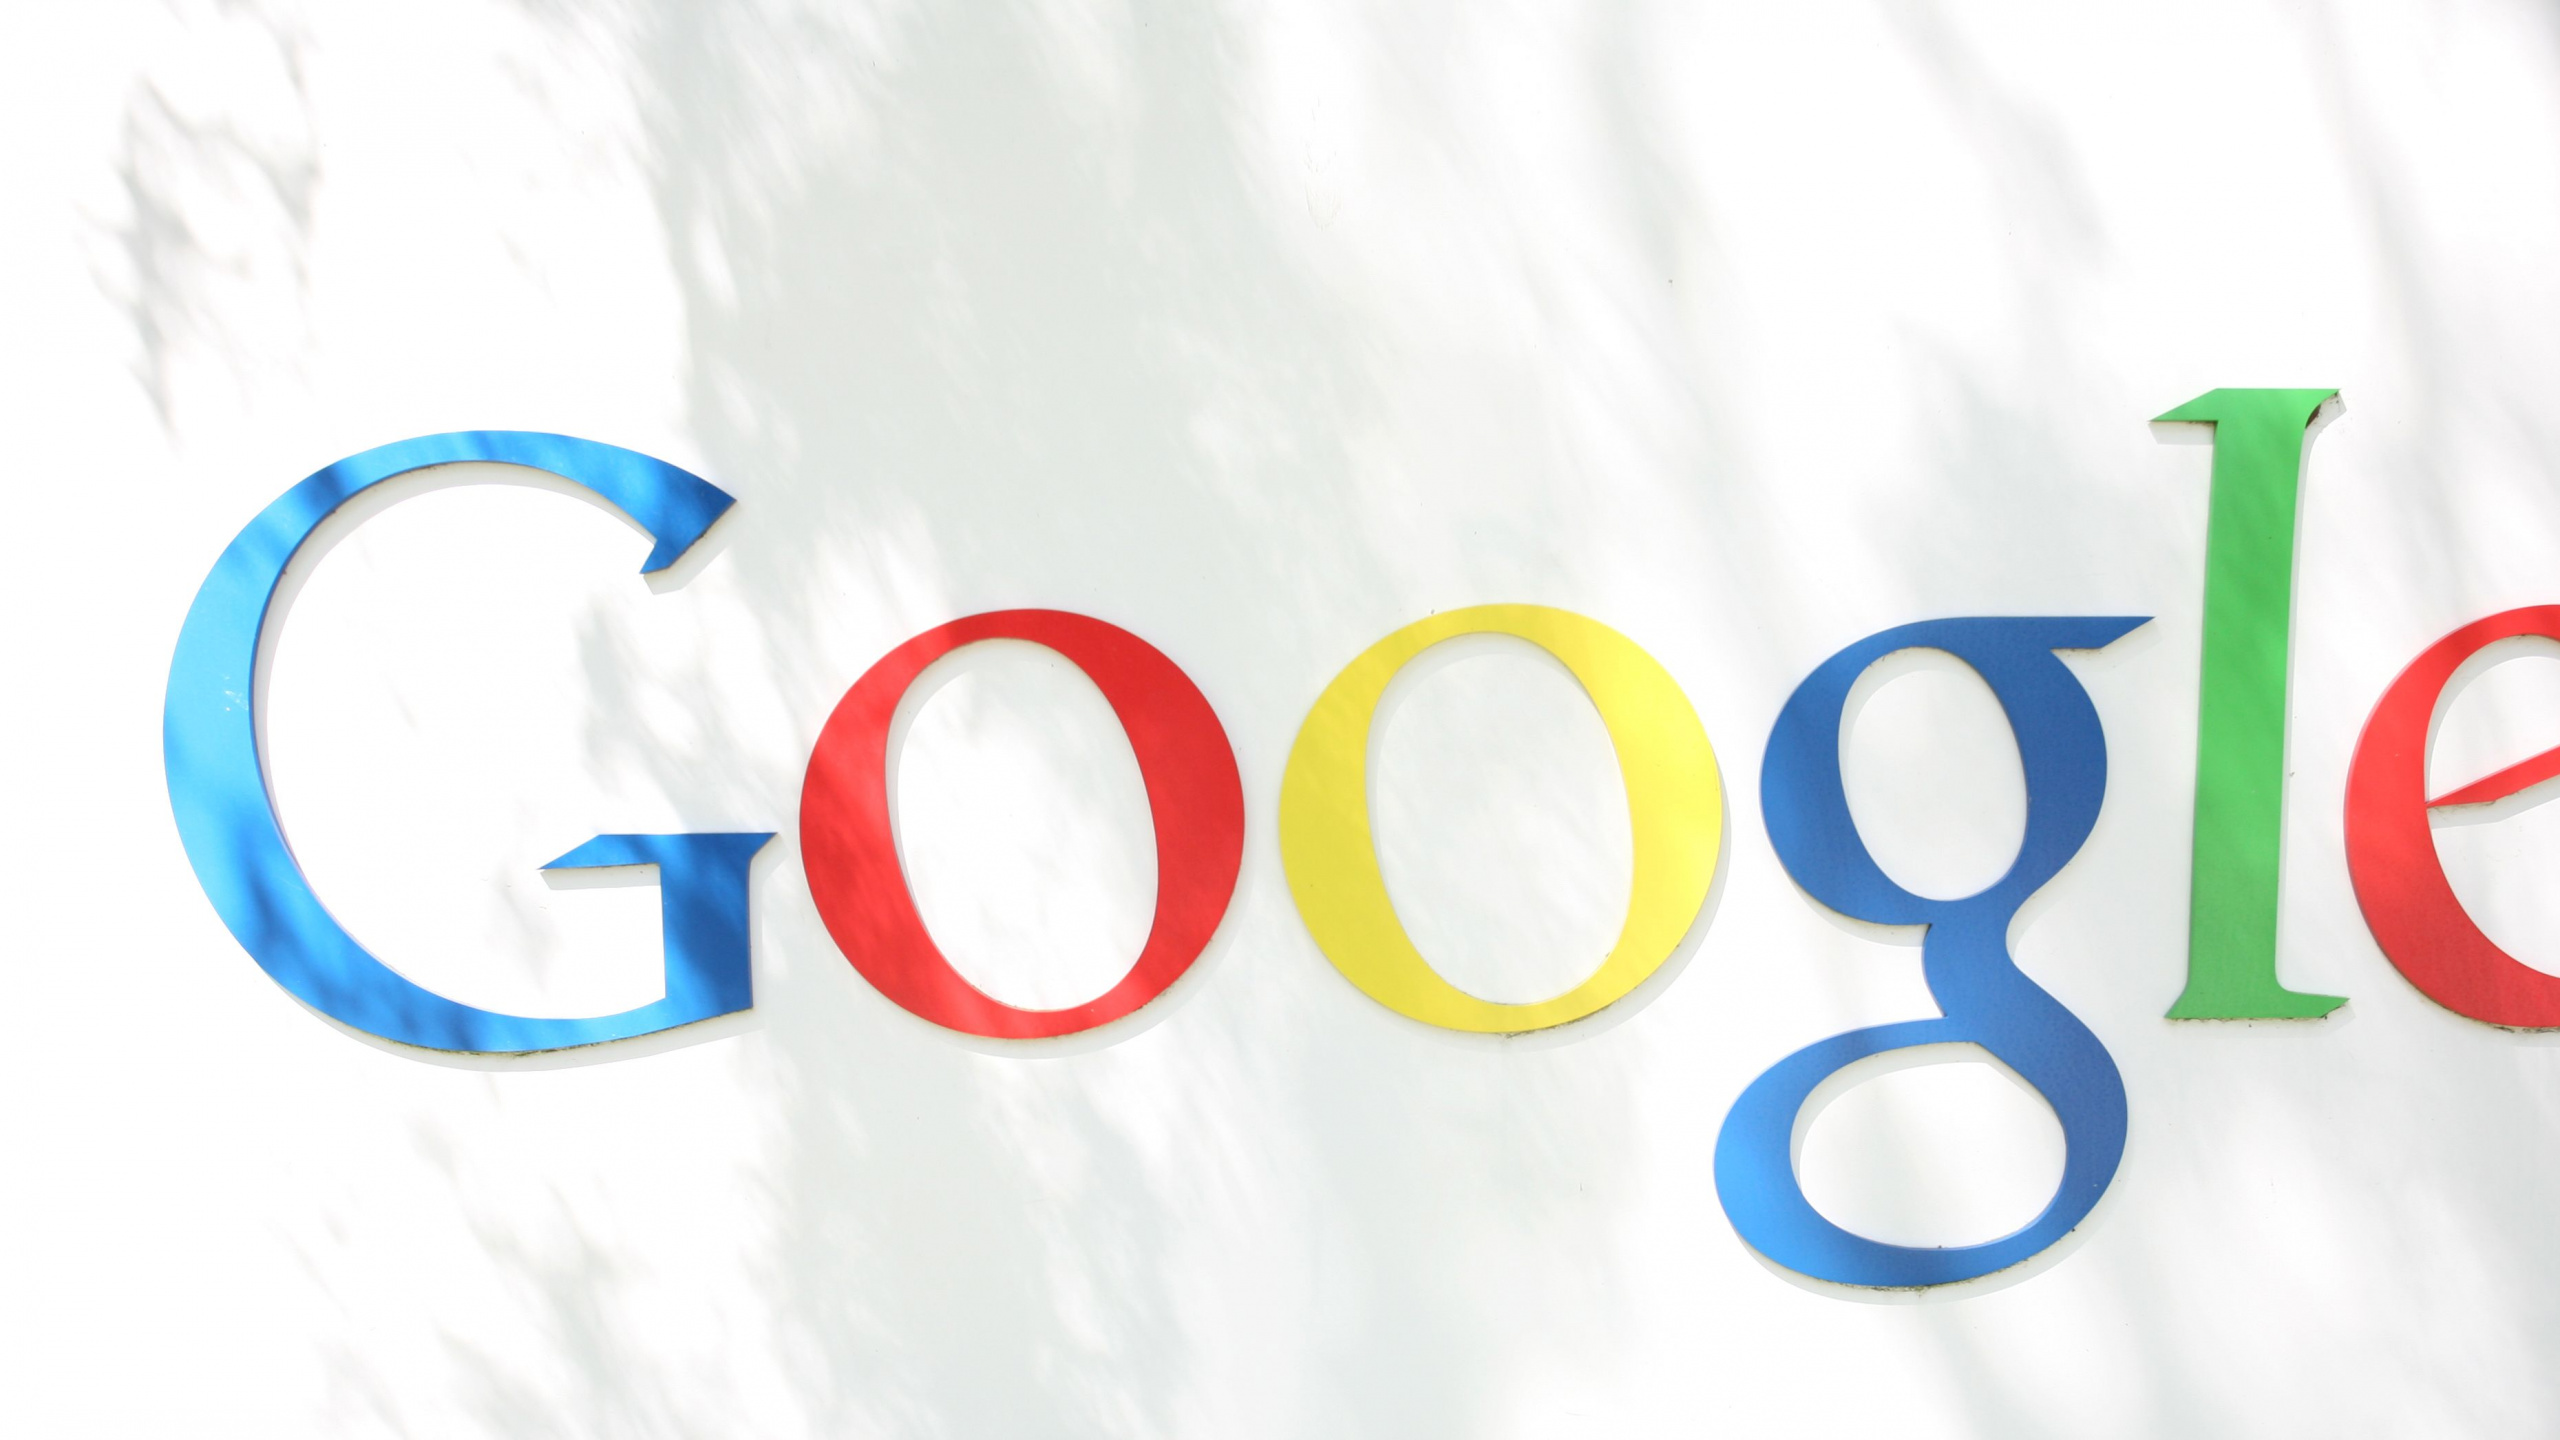 谷歌, 谷歌的标志, 谷歌玩, 文本, 品牌 壁纸 2560x1440 允许